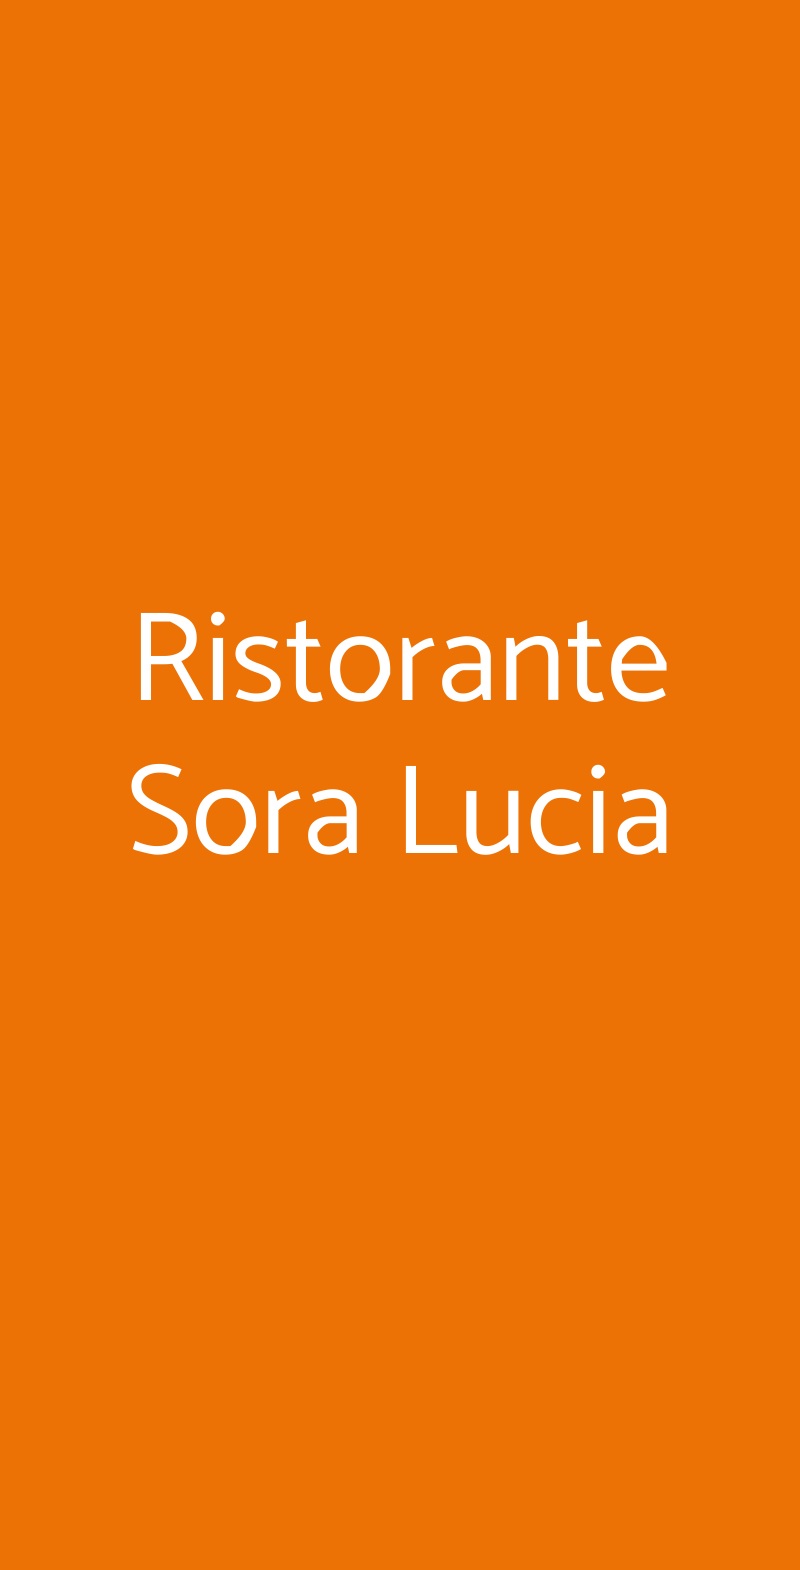 Ristorante Sora Lucia Roma menù 1 pagina